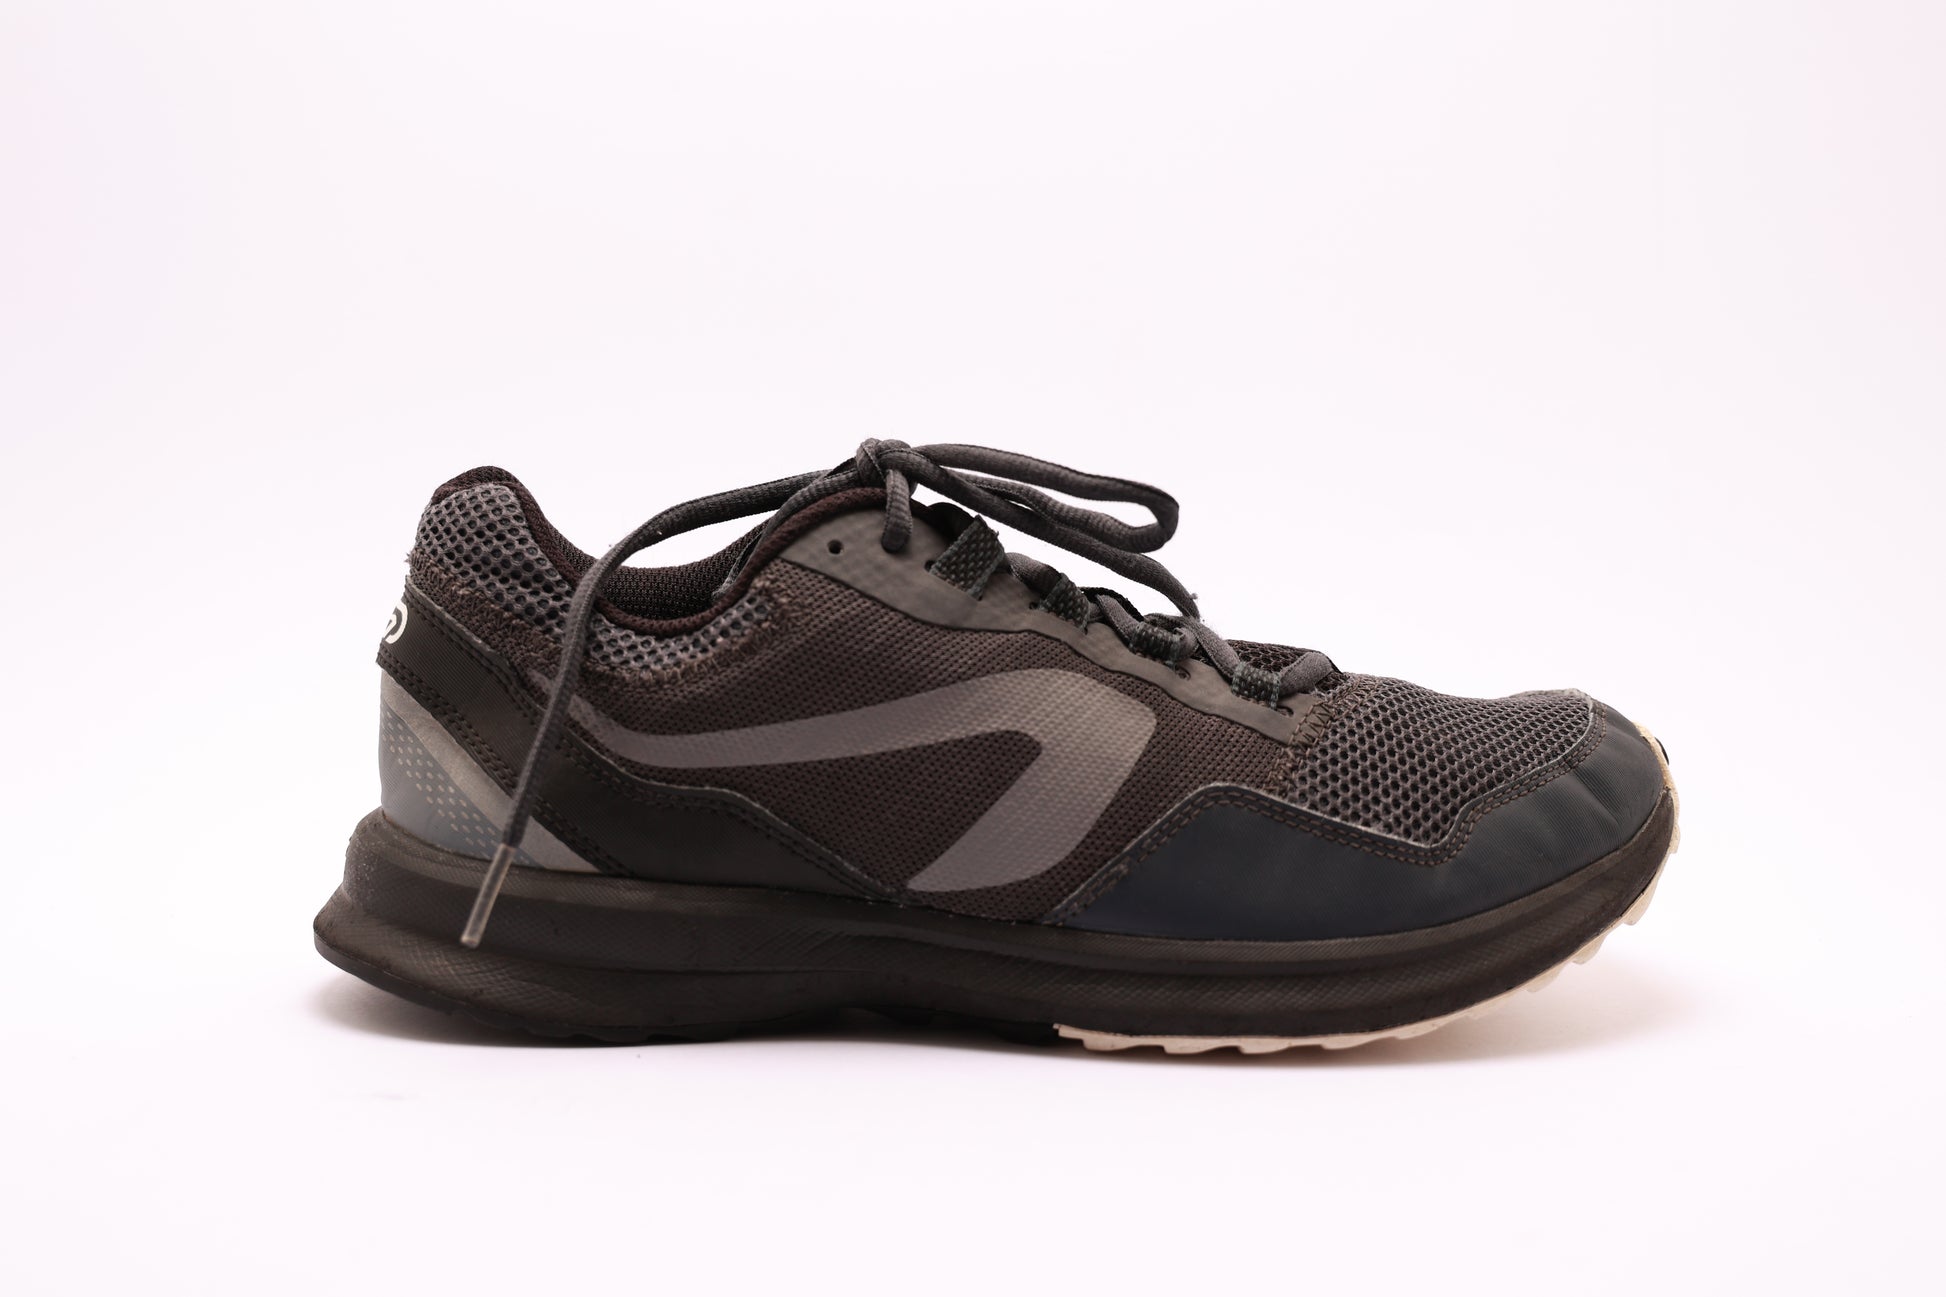 KALENJI by Decathlon Running Shoes For Women - Buy KALENJI by